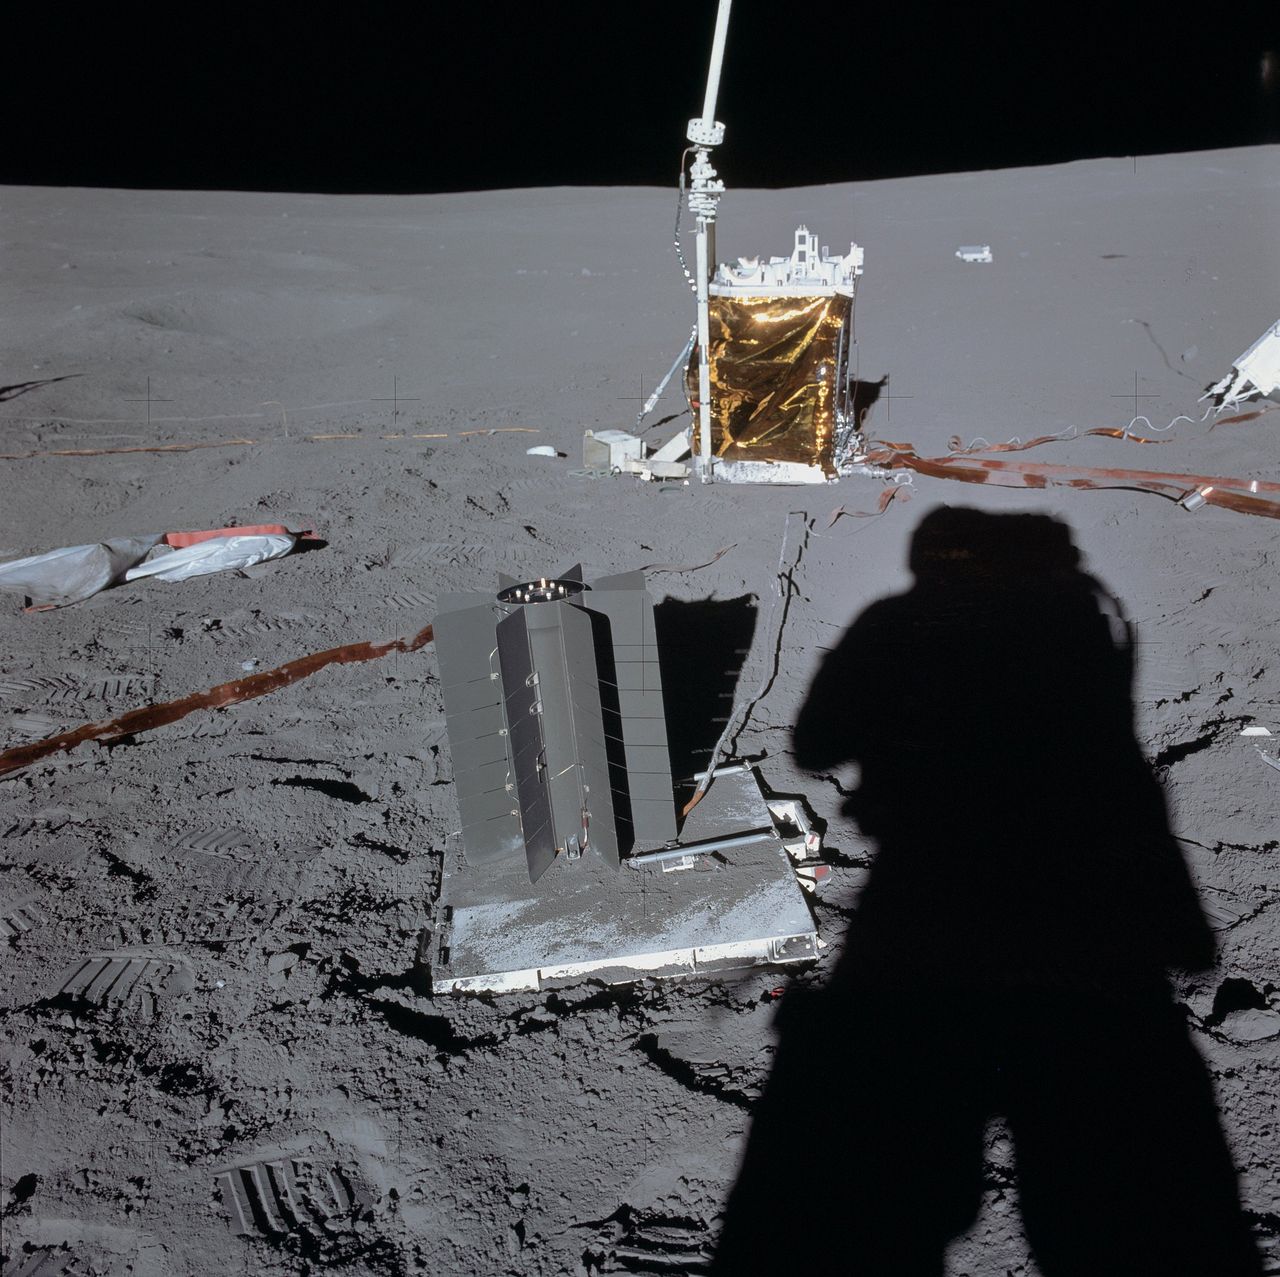 Ogniwo SNAP-27 na Księżycu, misja Apollo 14